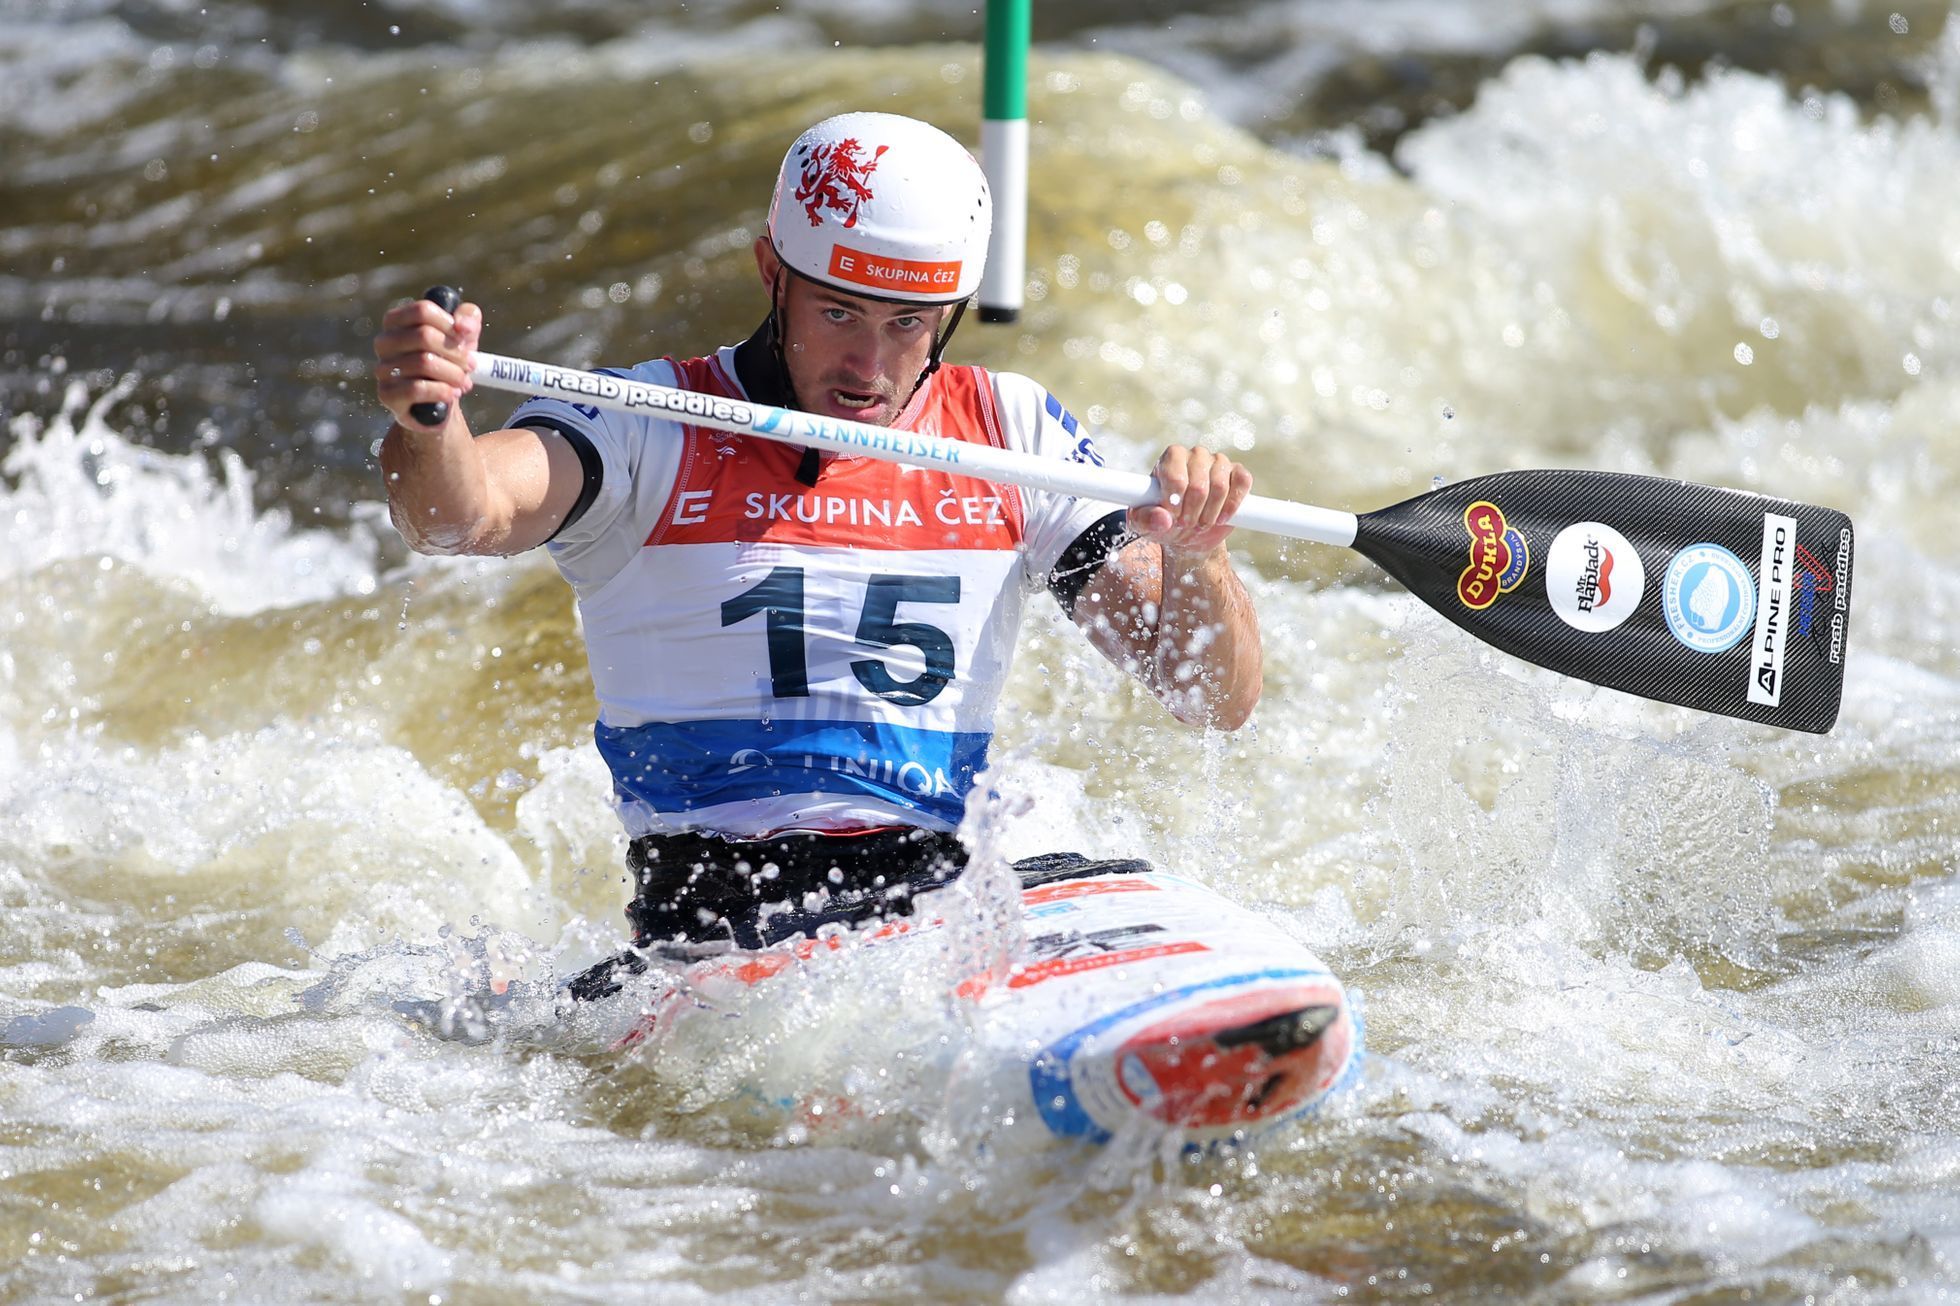 ME ve vodním slalomu 2020 v Praze: Kanoista Vojtěch Heger